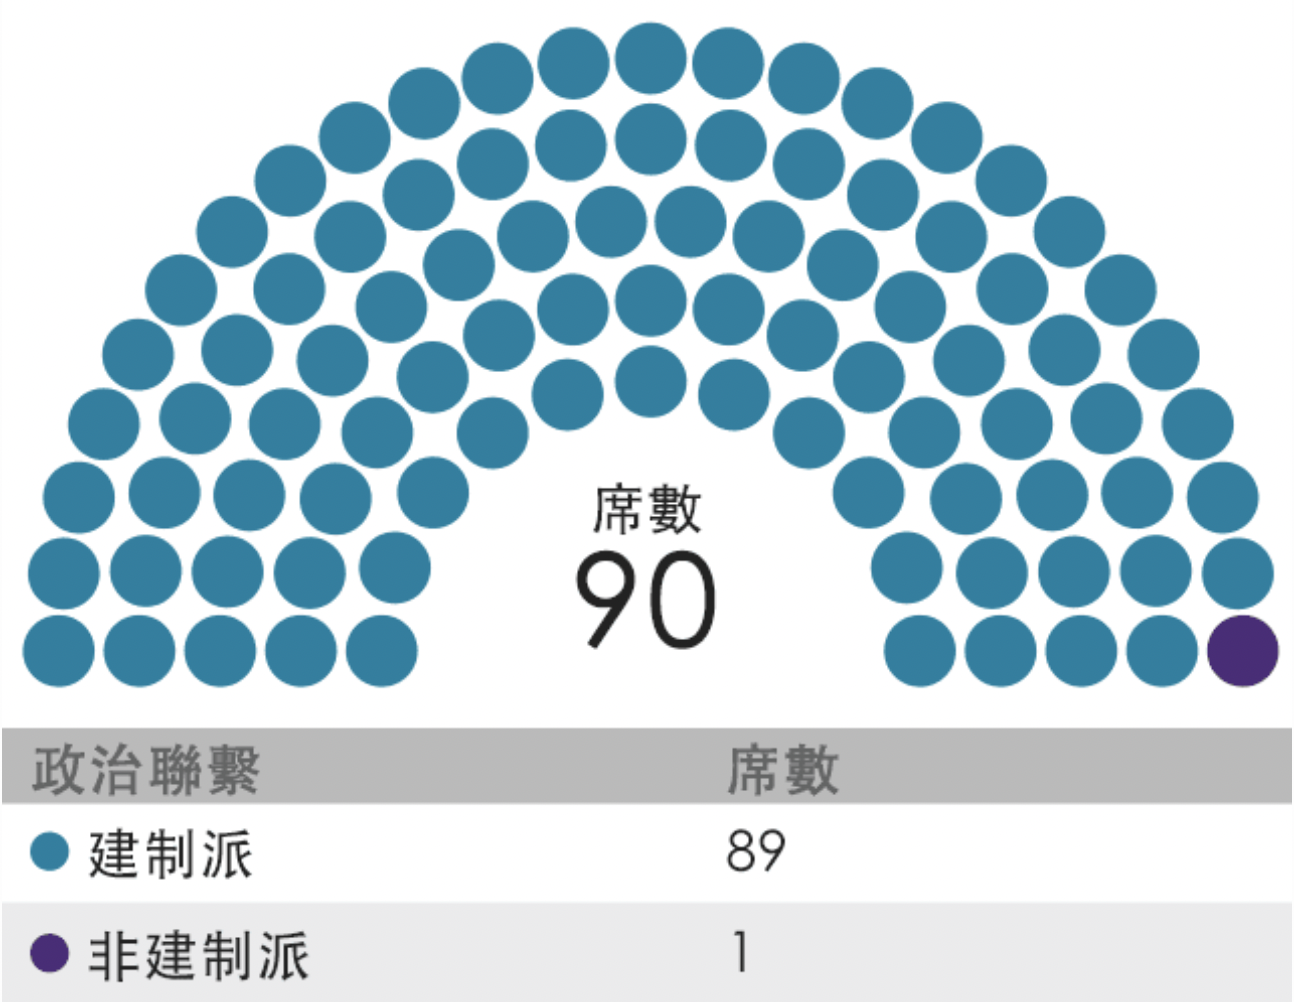 2021年香港立法會選舉結果中的席位分配